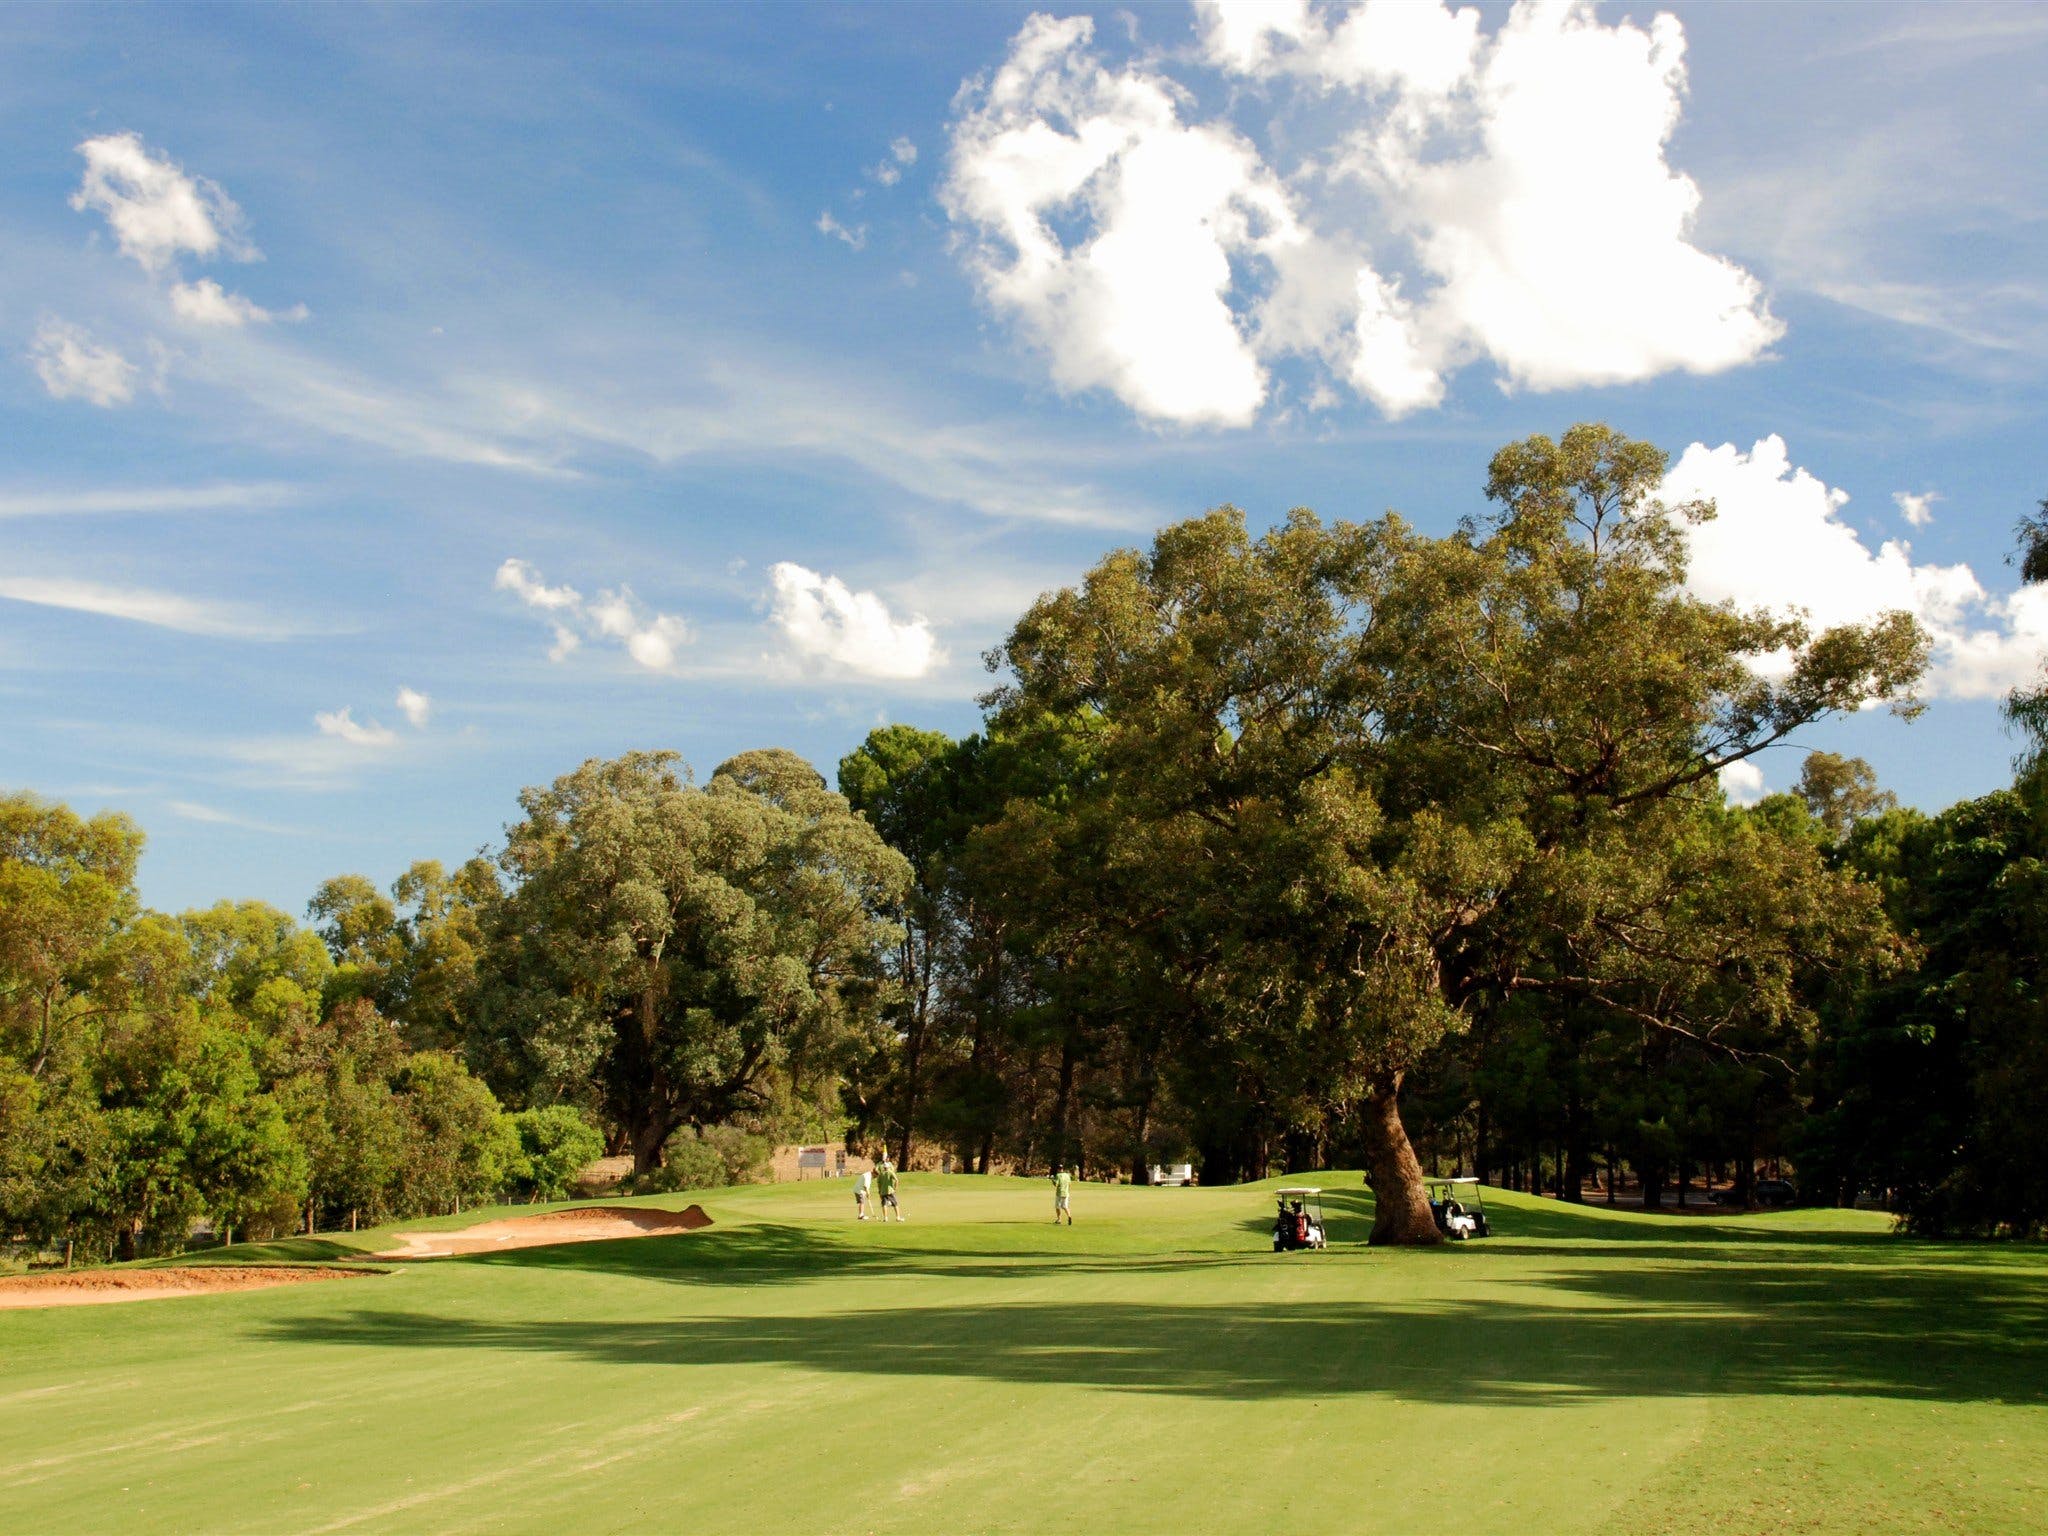 Corowa Golf Club - Geraldton Accommodation